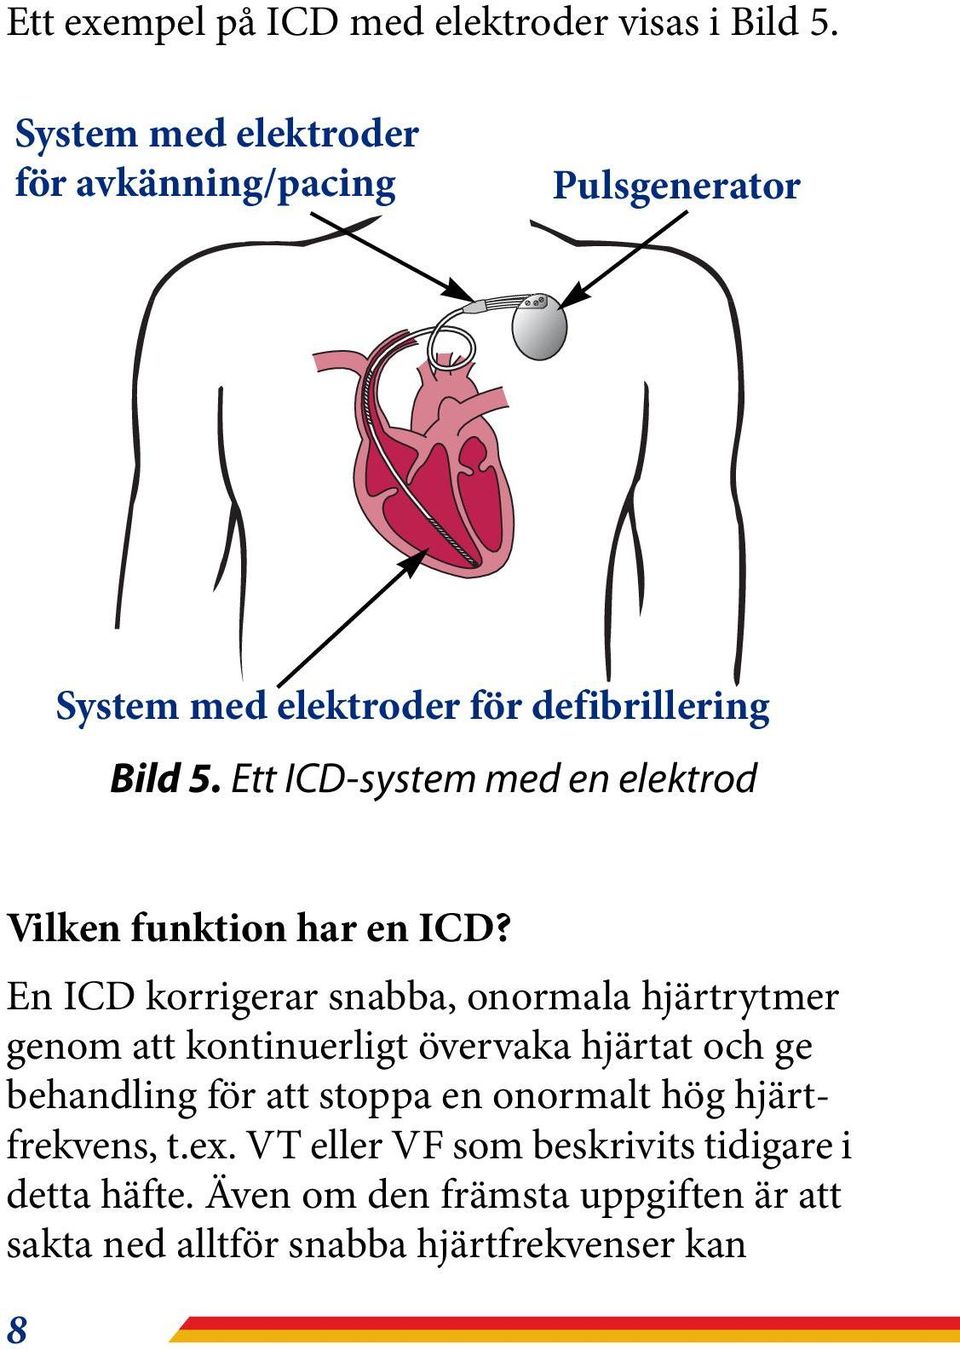 Ett ICD-system med en elektrod Vilken funktion har en ICD?